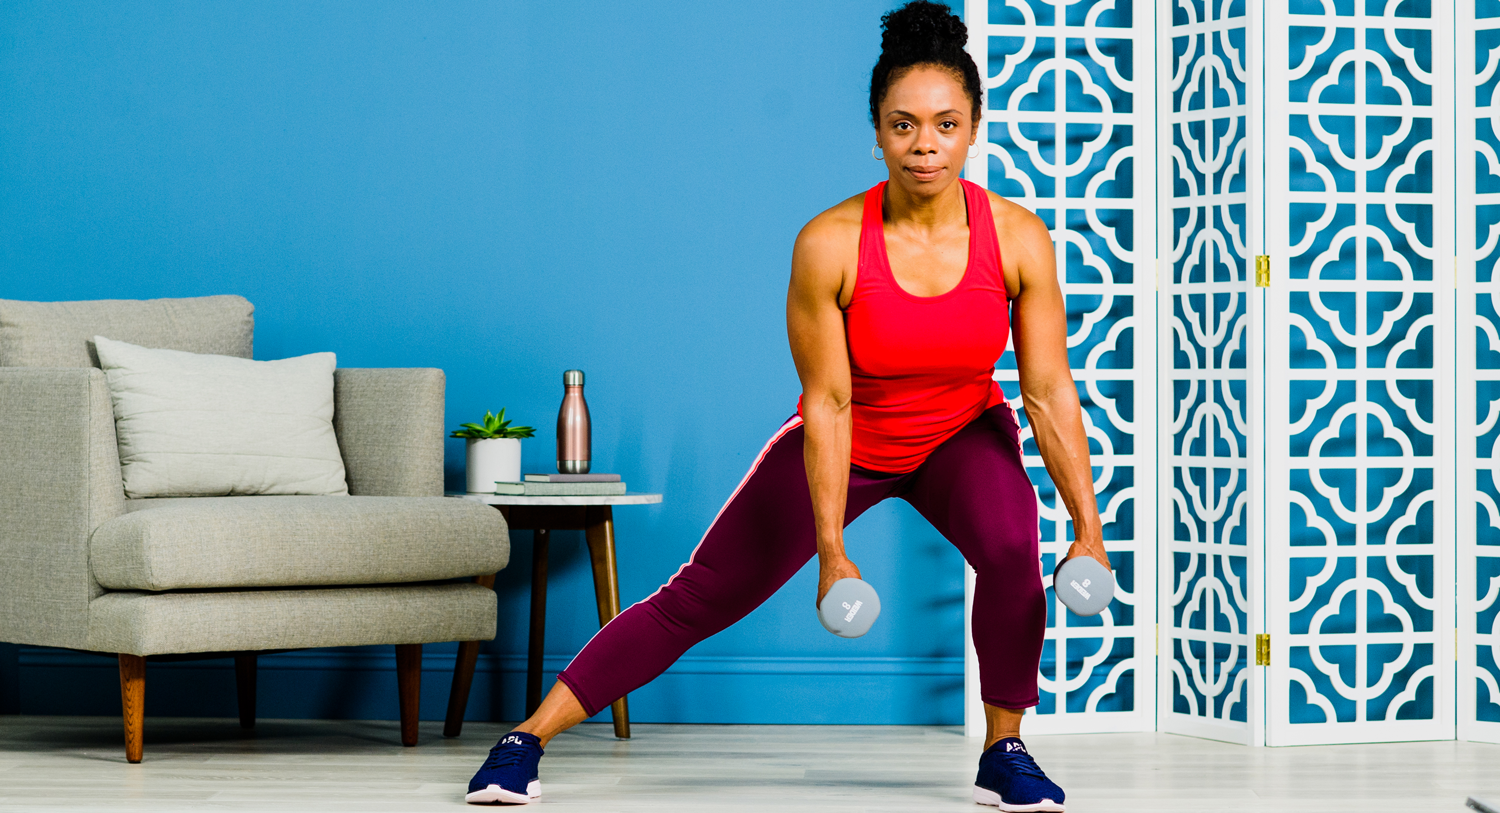 inner thigh exercises for women